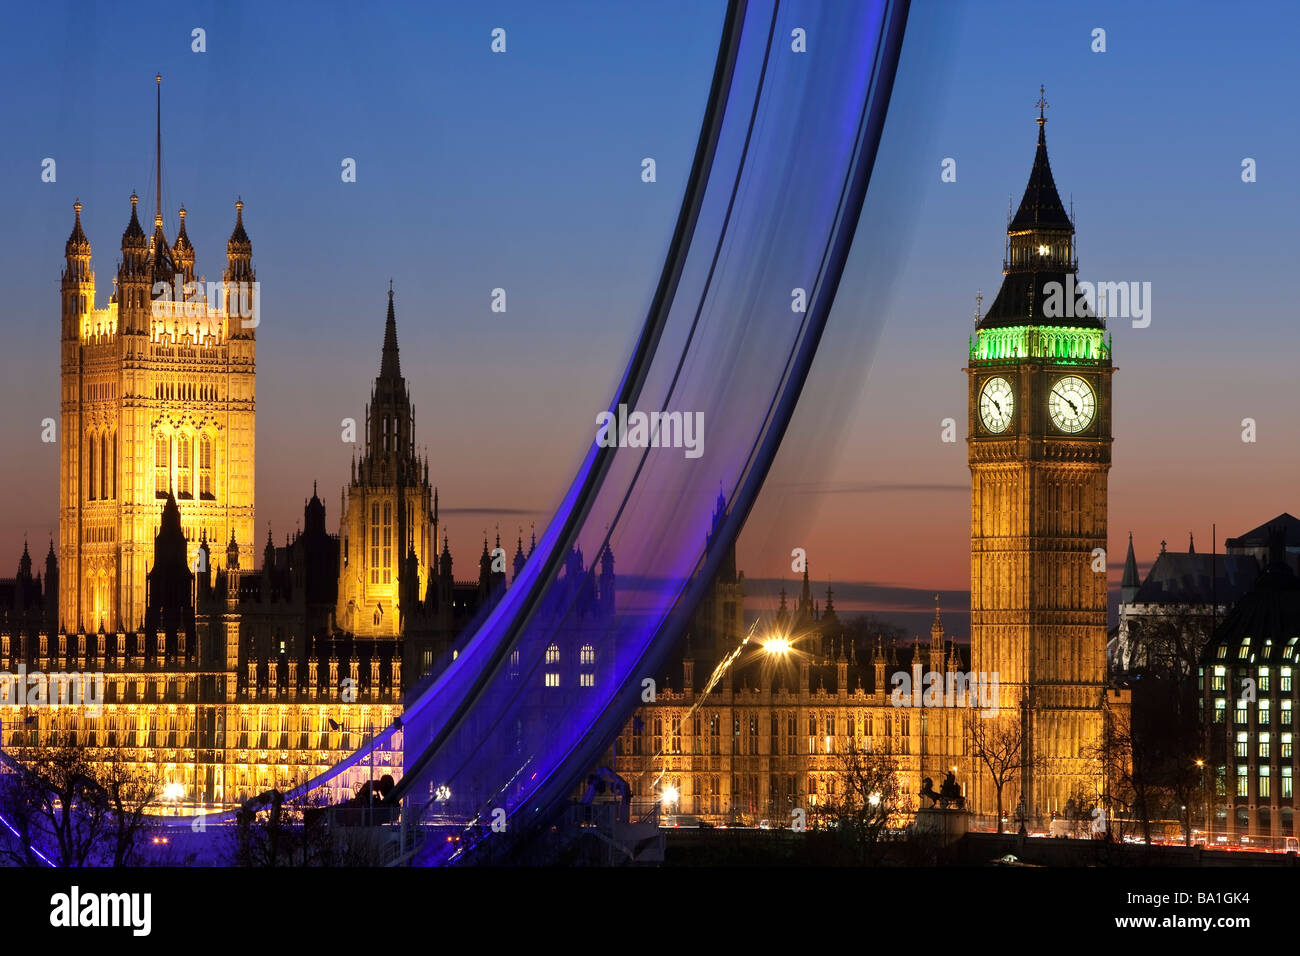 Grande roue du millénaire (London Eye) et Big Ben, Londres, Angleterre, Royaume-Uni Banque D'Images